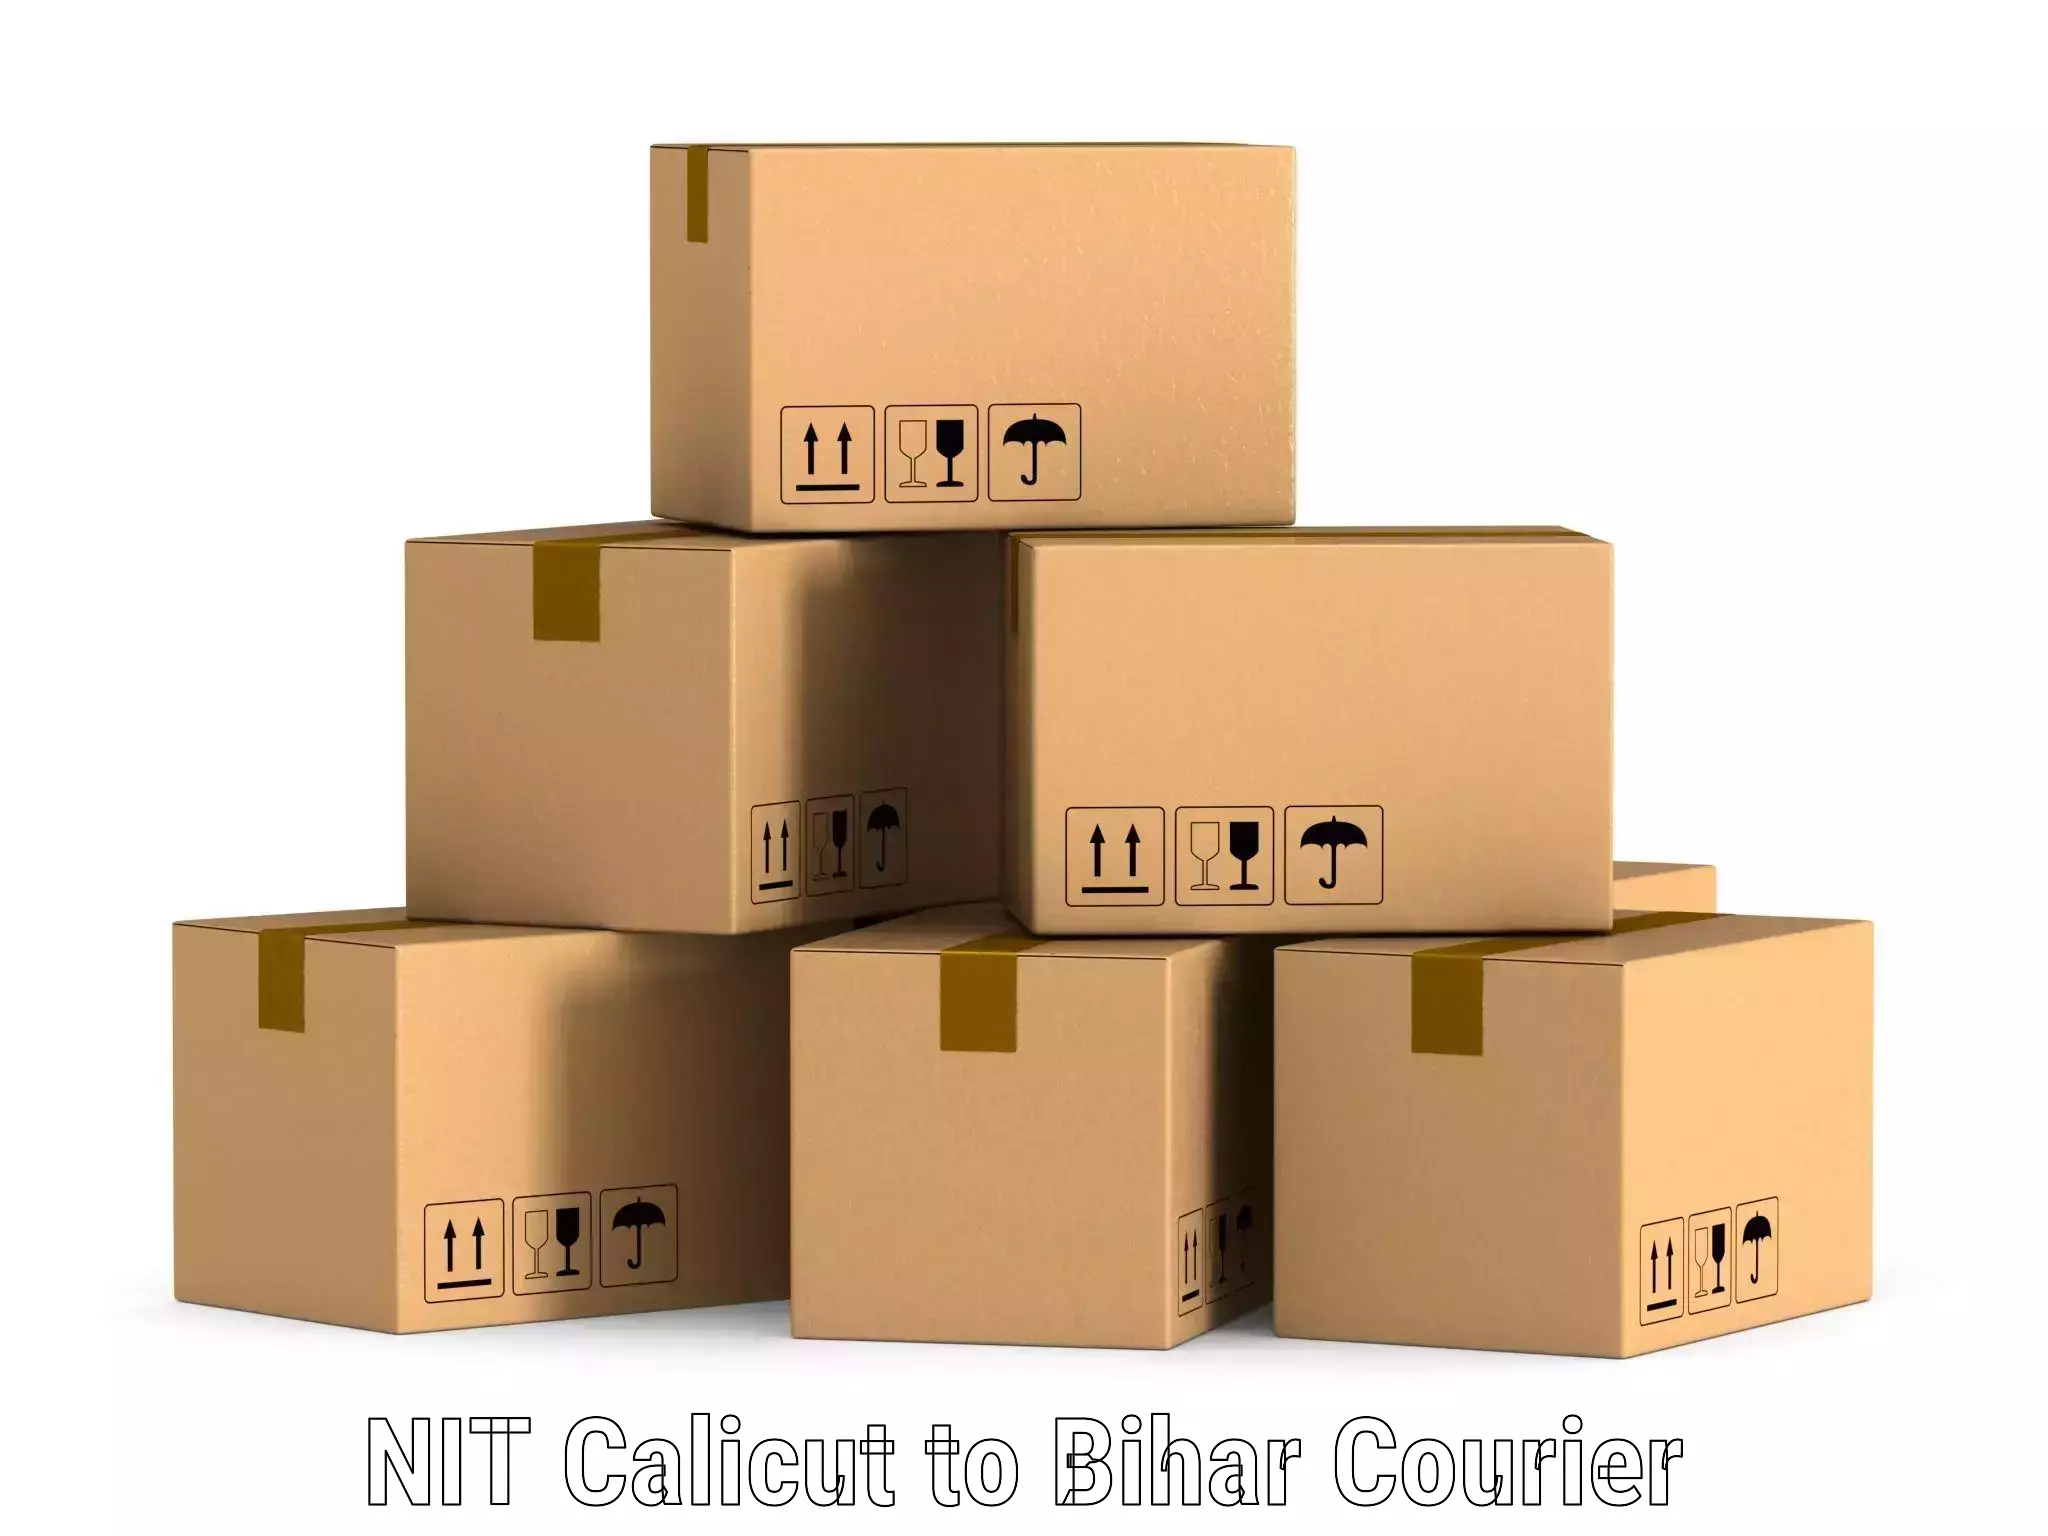 Reliable parcel services NIT Calicut to Fatwah